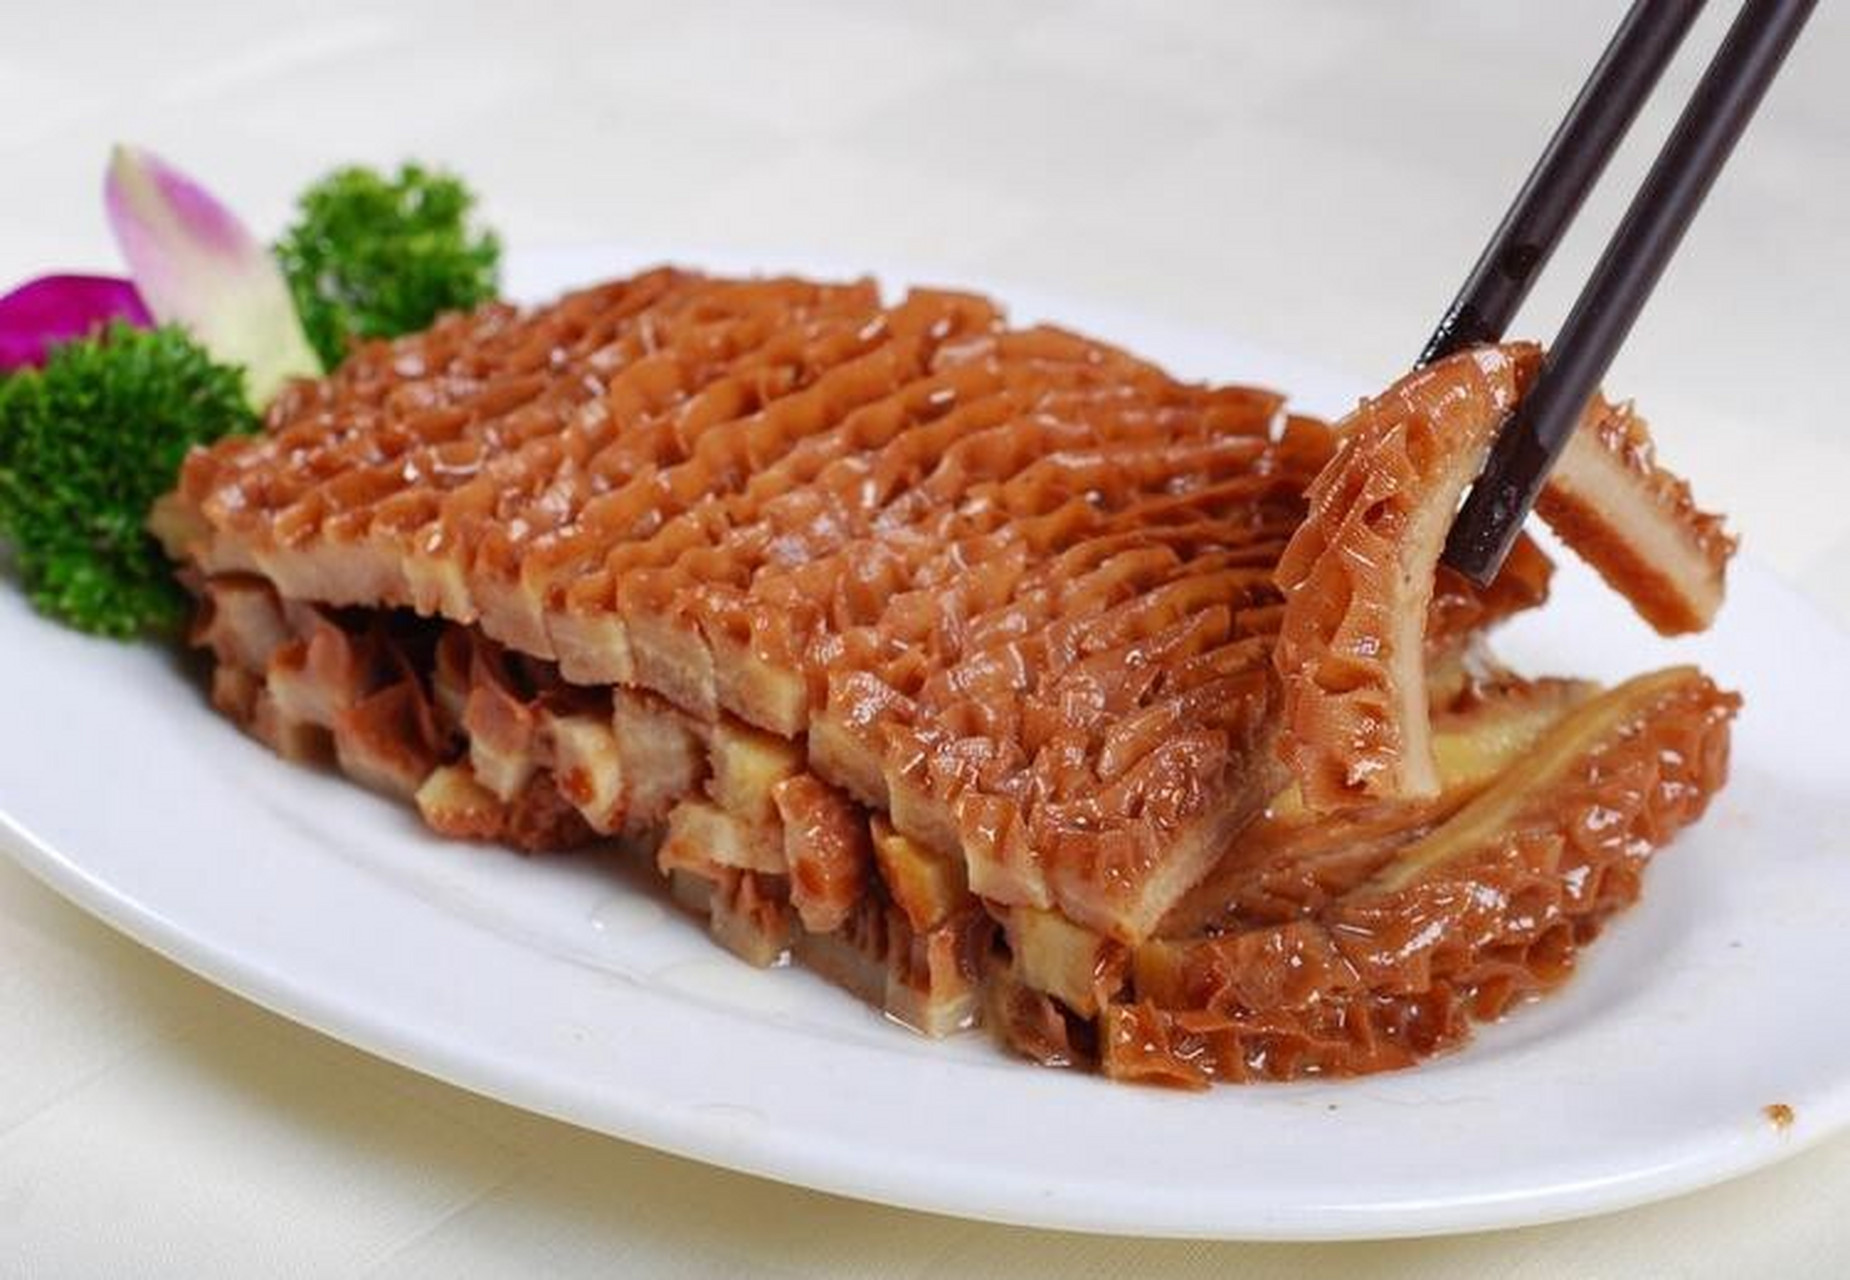 卤水金钱肚 卤水金钱肚是一道广东省的传统名菜,属于粤菜系